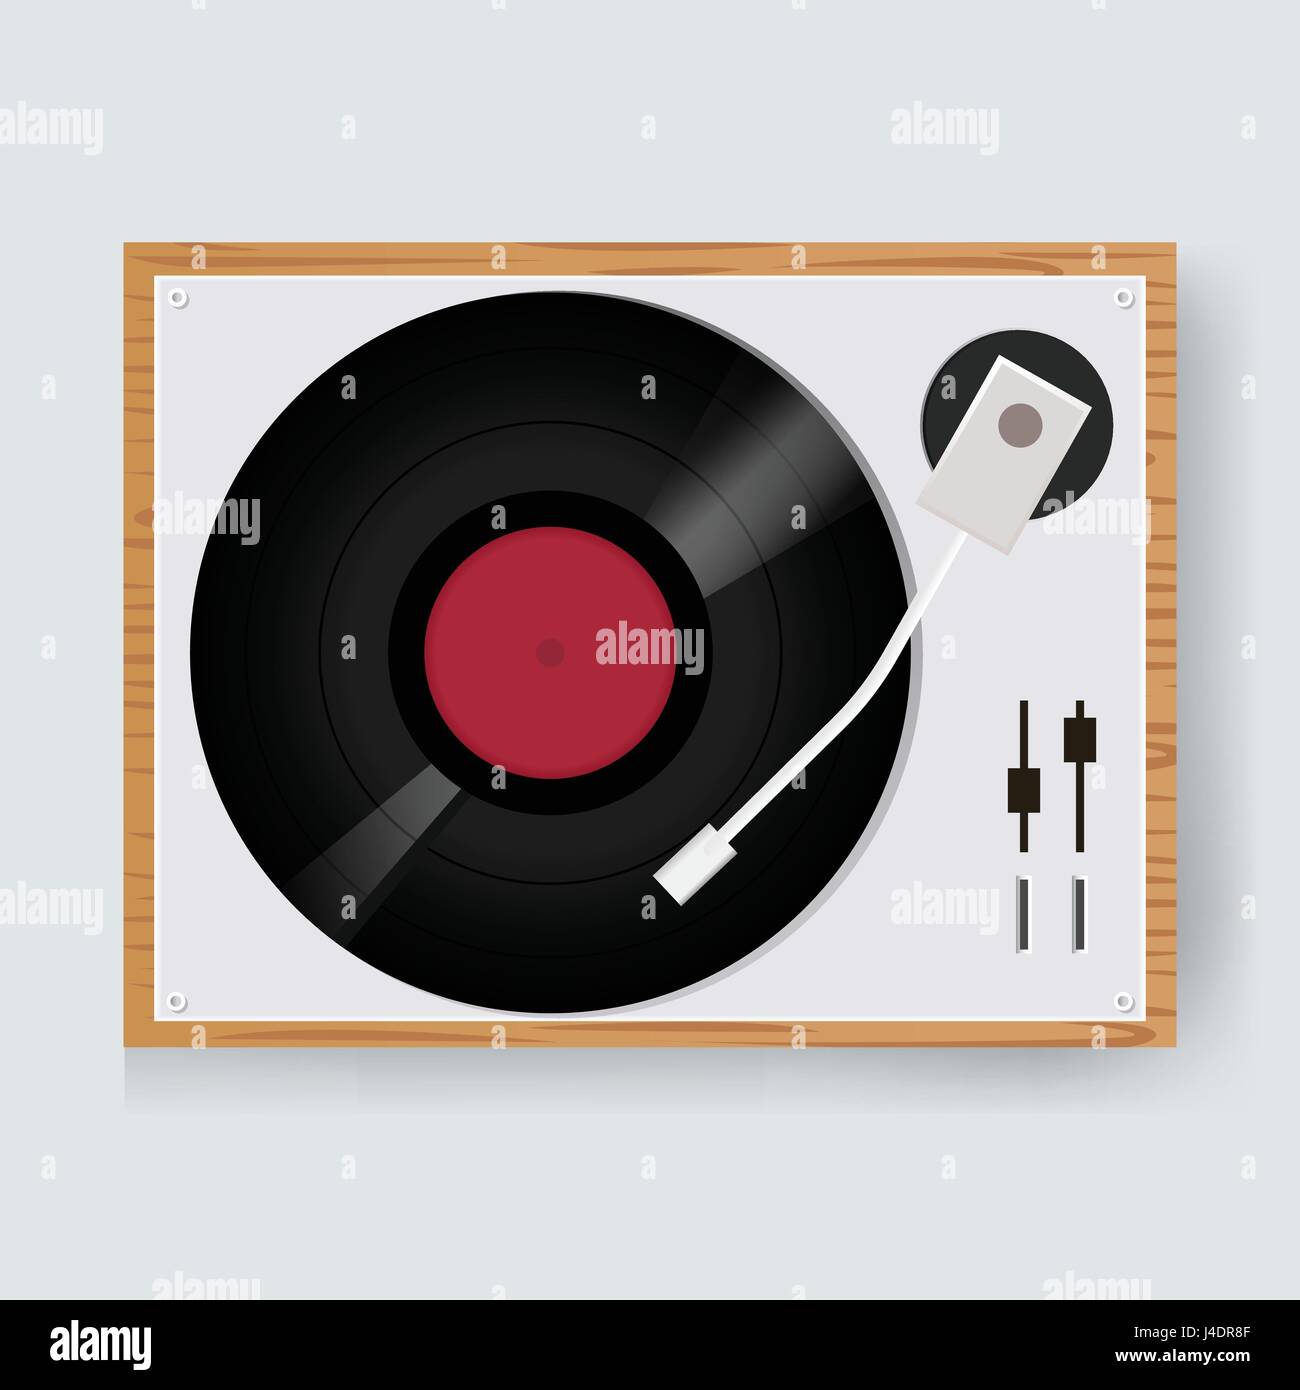 Realista 3d detallado retro vinil tocadiscos vista superior concepto de  sonido y entretenimiento ilustración vectorial de tocadiscos de audio